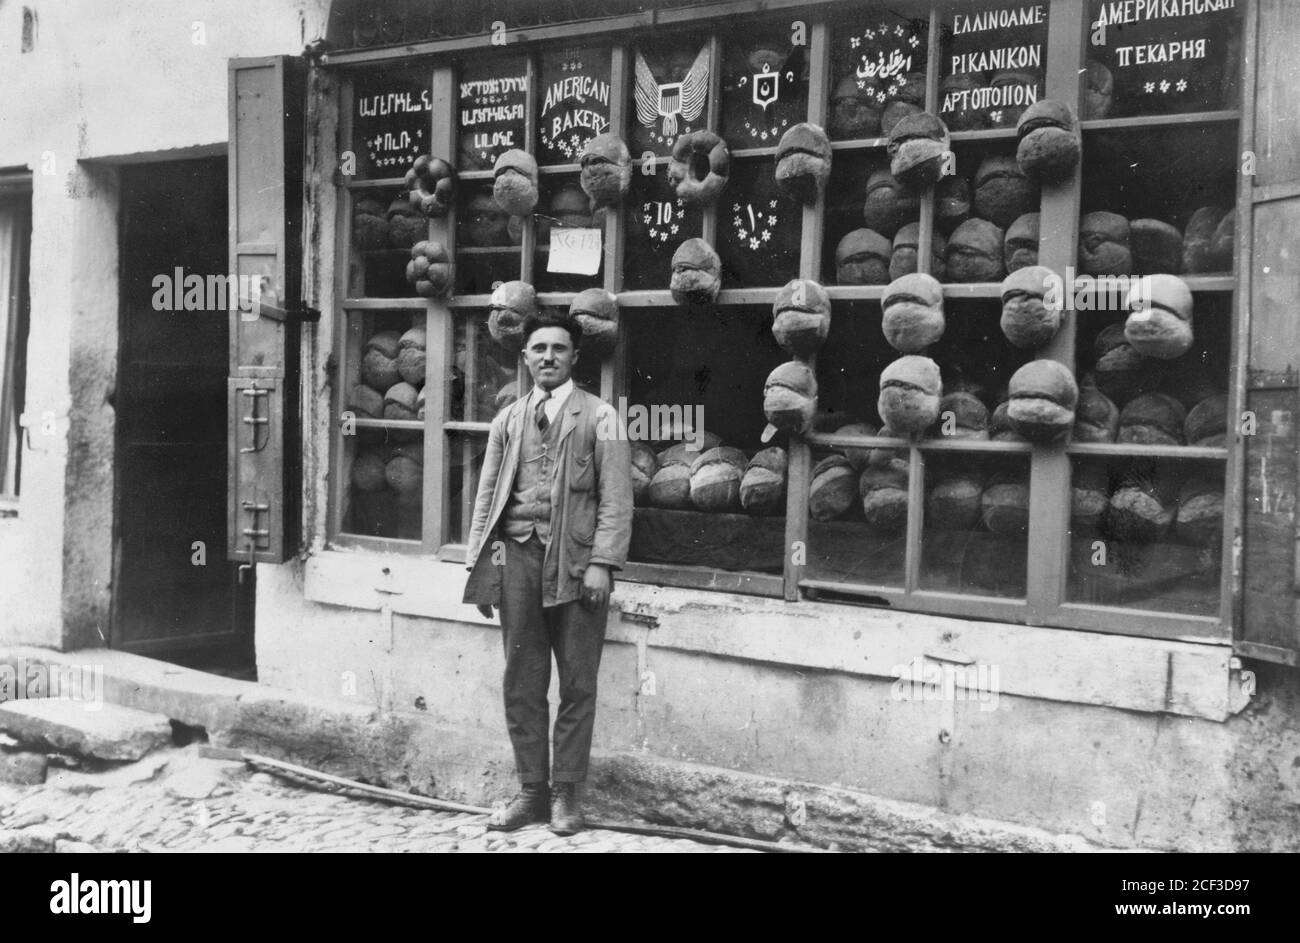 Baker debout devant la boulangerie américaine qui affiche des panneaux en arménien, Ladino (en caractères hébreux), anglais, turc ottoman, grec et russe avec des échantillons de pain attaché aux meneaux, Ortaköy, Istanbul, Turquie, 1922 Banque D'Images